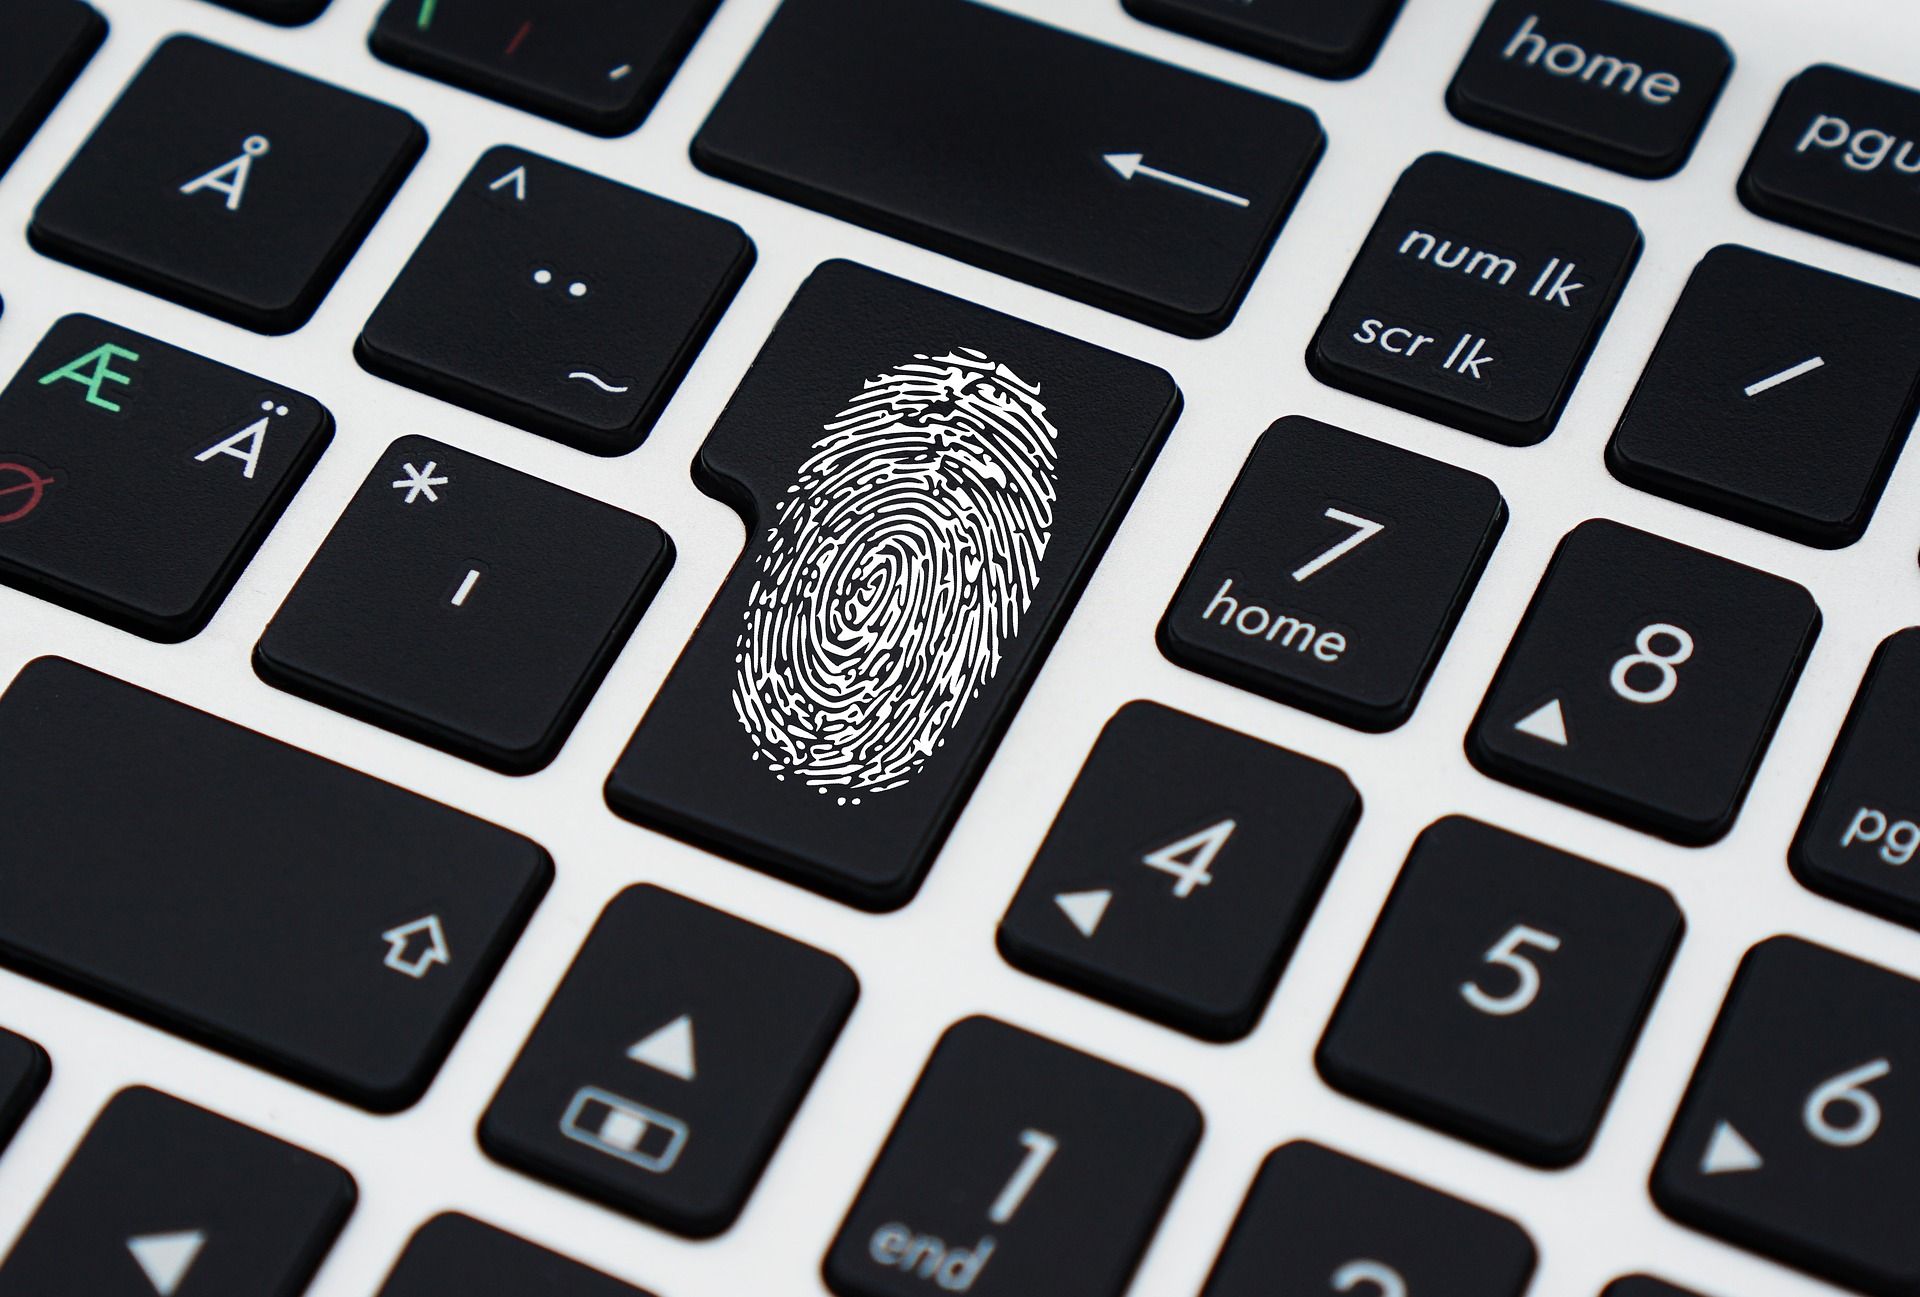 Bezahlen per Fingerabdruck trifft auf großes Interesse – Auch biometrische Autorisierungsverfahren wie Iris-Scan und Stimmprofil sind im Kommen